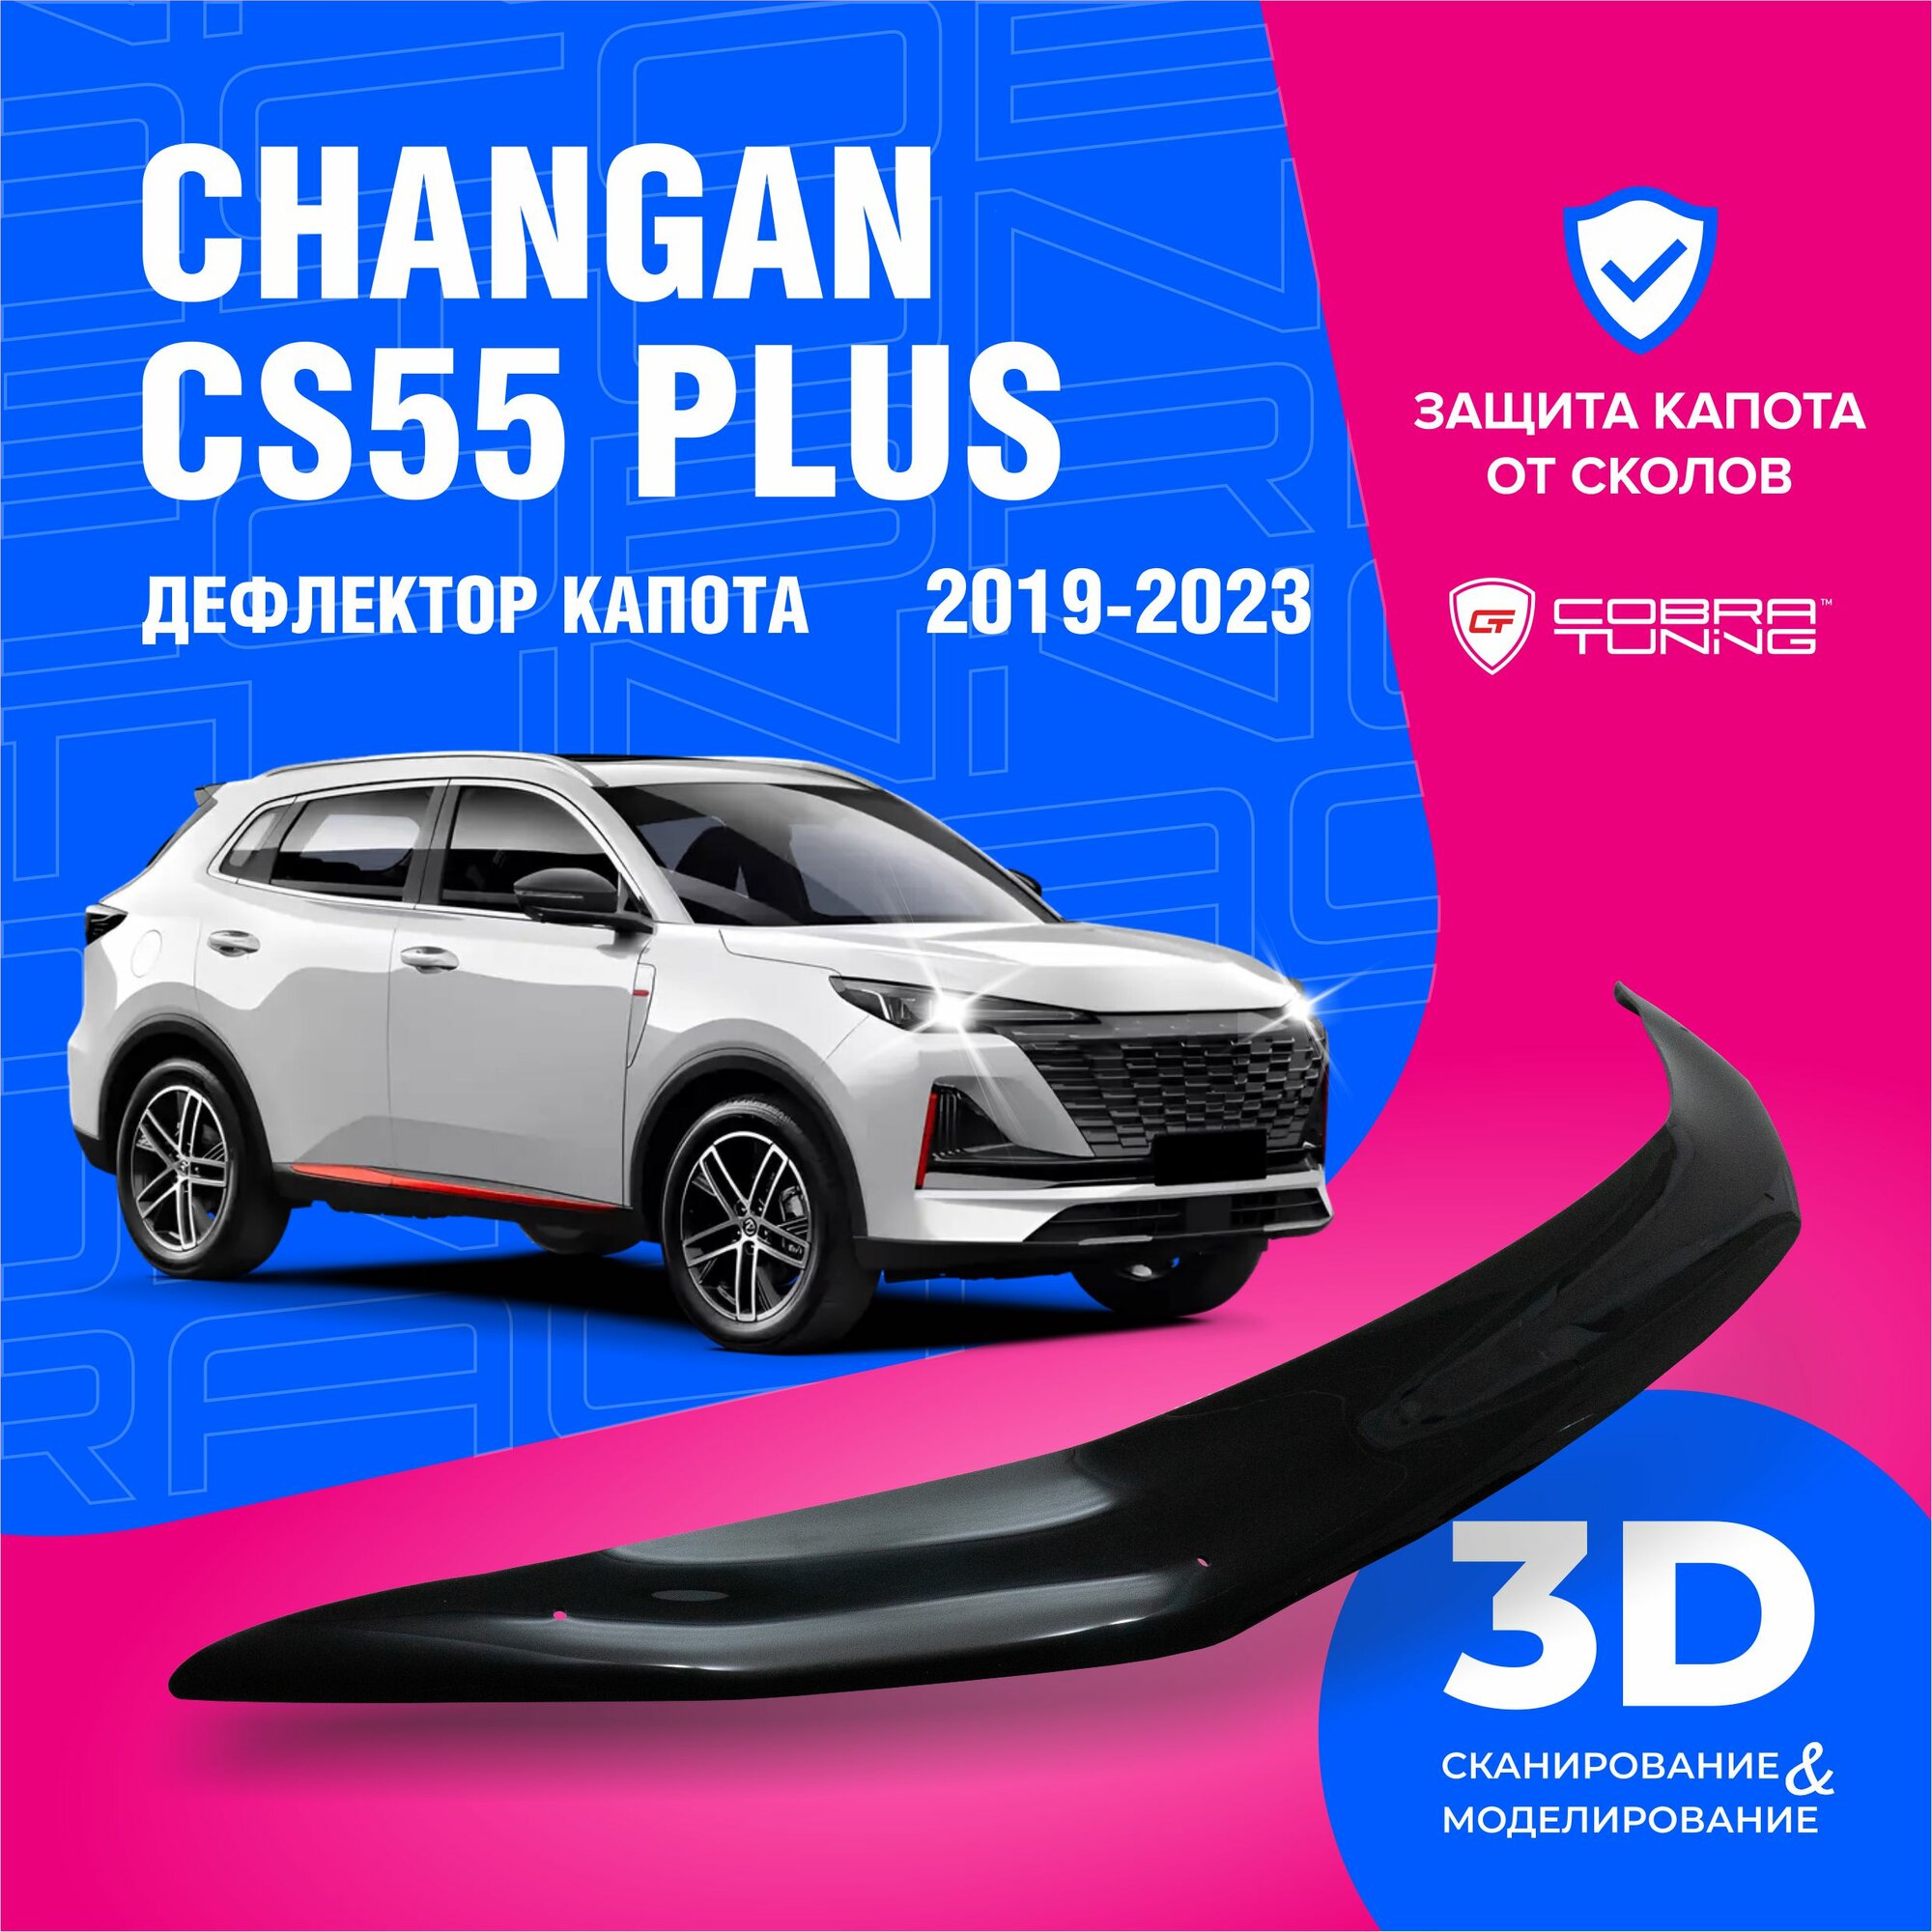 Дефлекторы боковых окон для Changan CS55 PLUS (Чанган ЦС55 плюс) 2019-2023 ветровики на двери автомобиля Cobra Tuning.